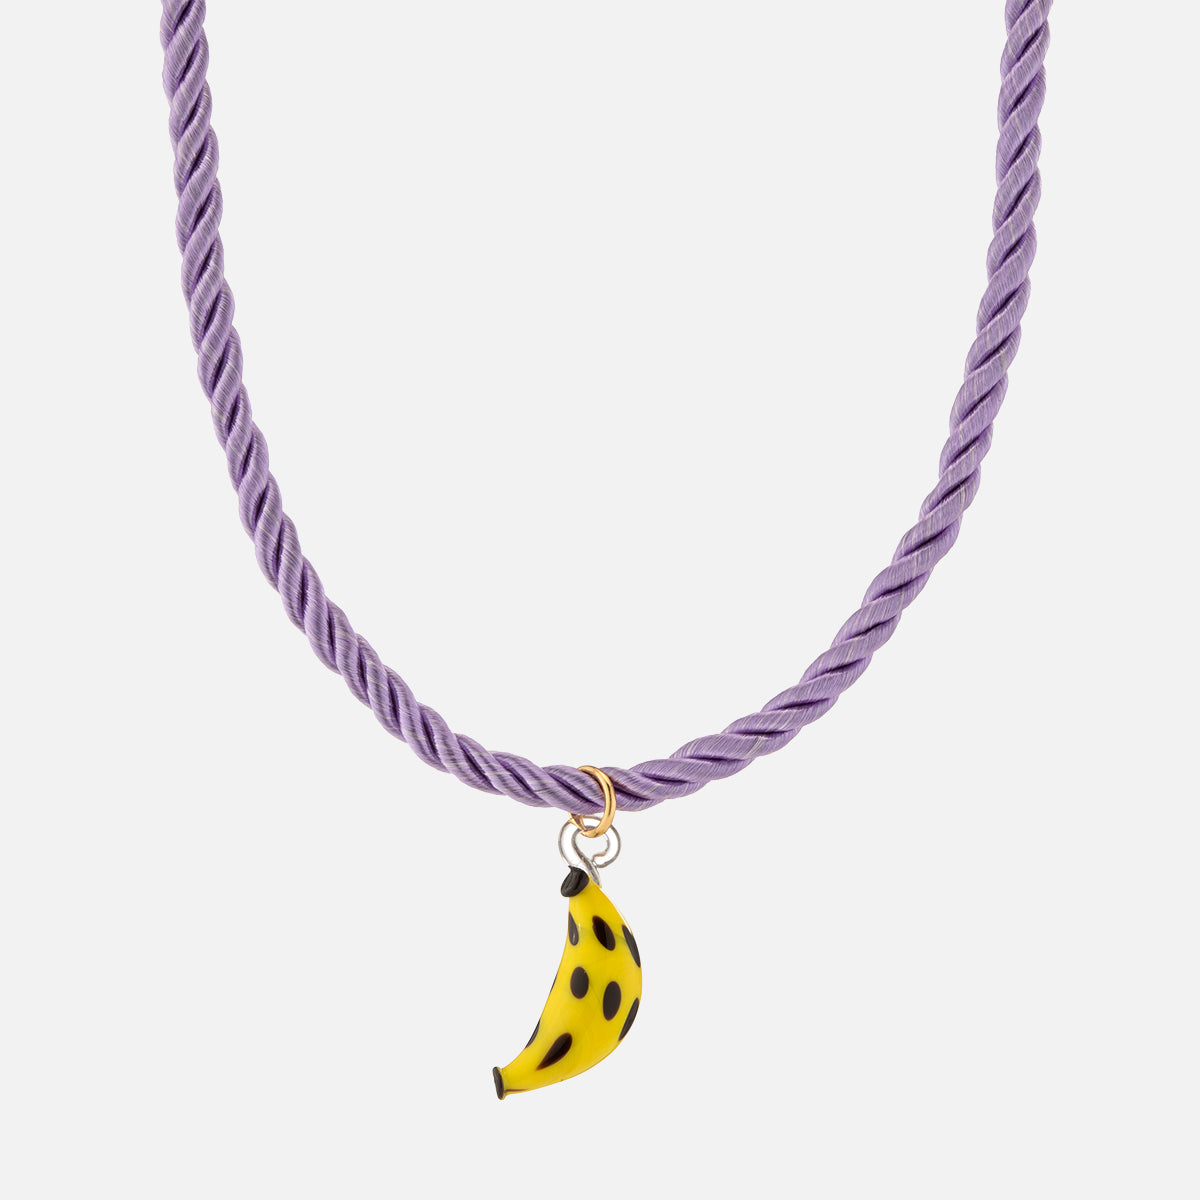 Frutta Necklace, Banana